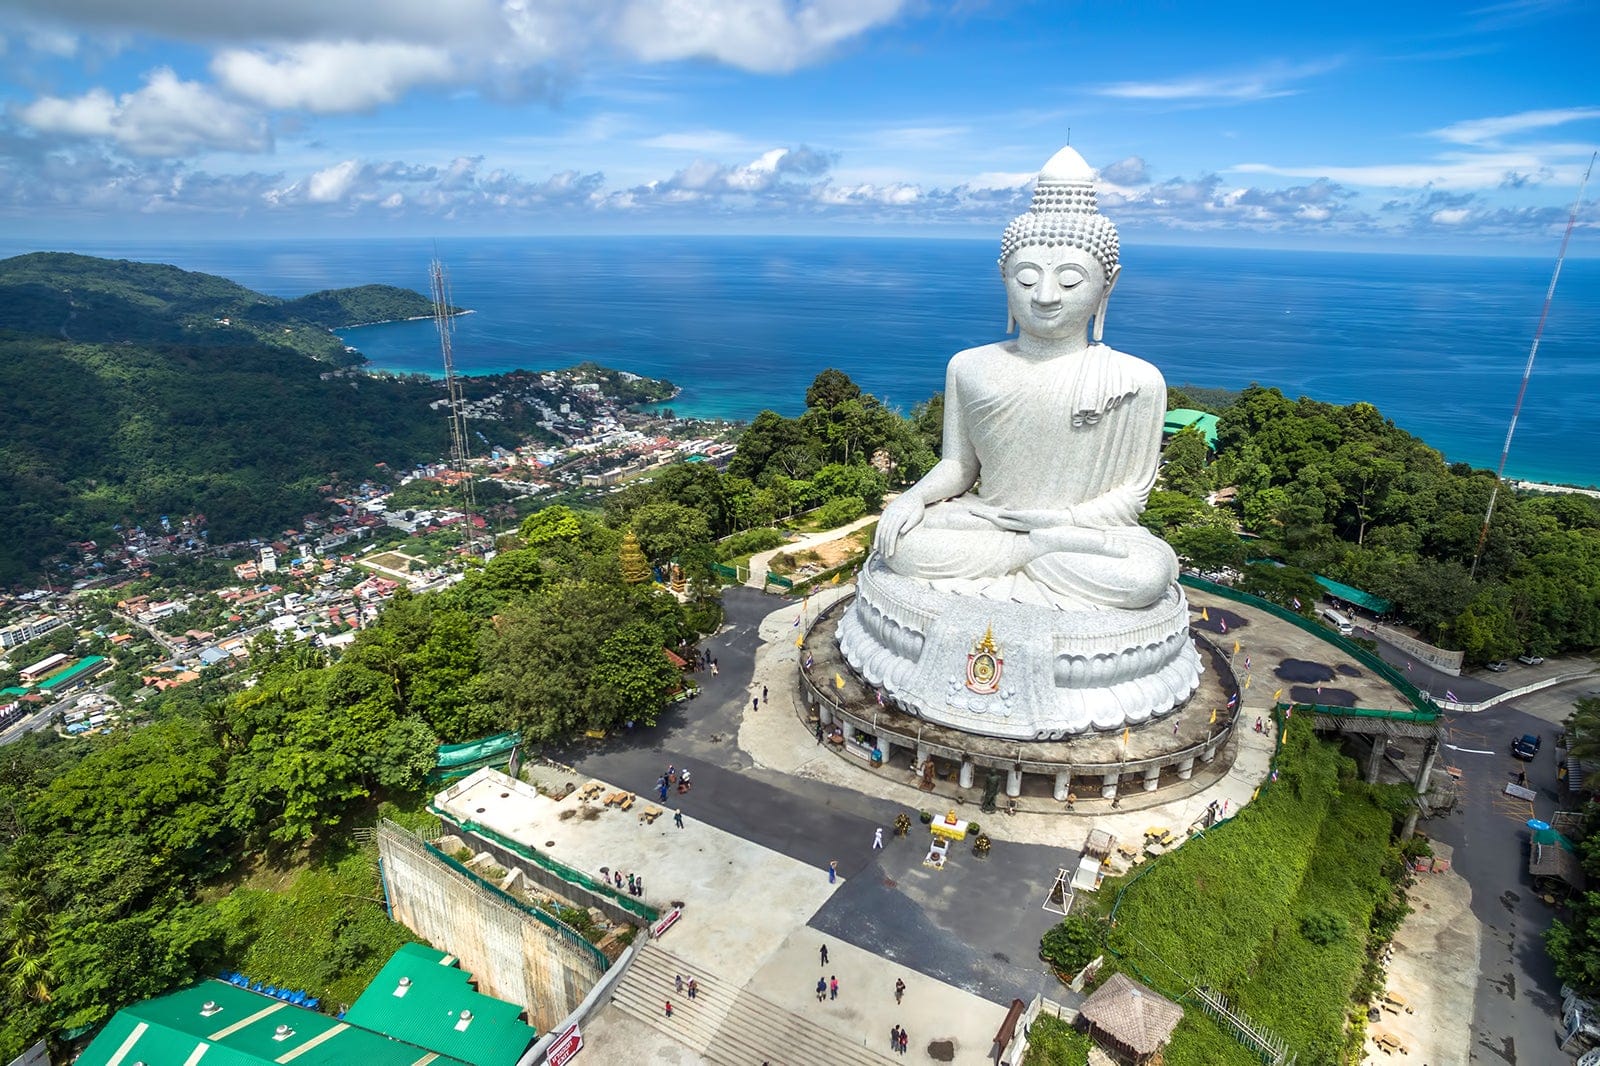 The Big Buddha near the Tonsai waterfall, Phuket